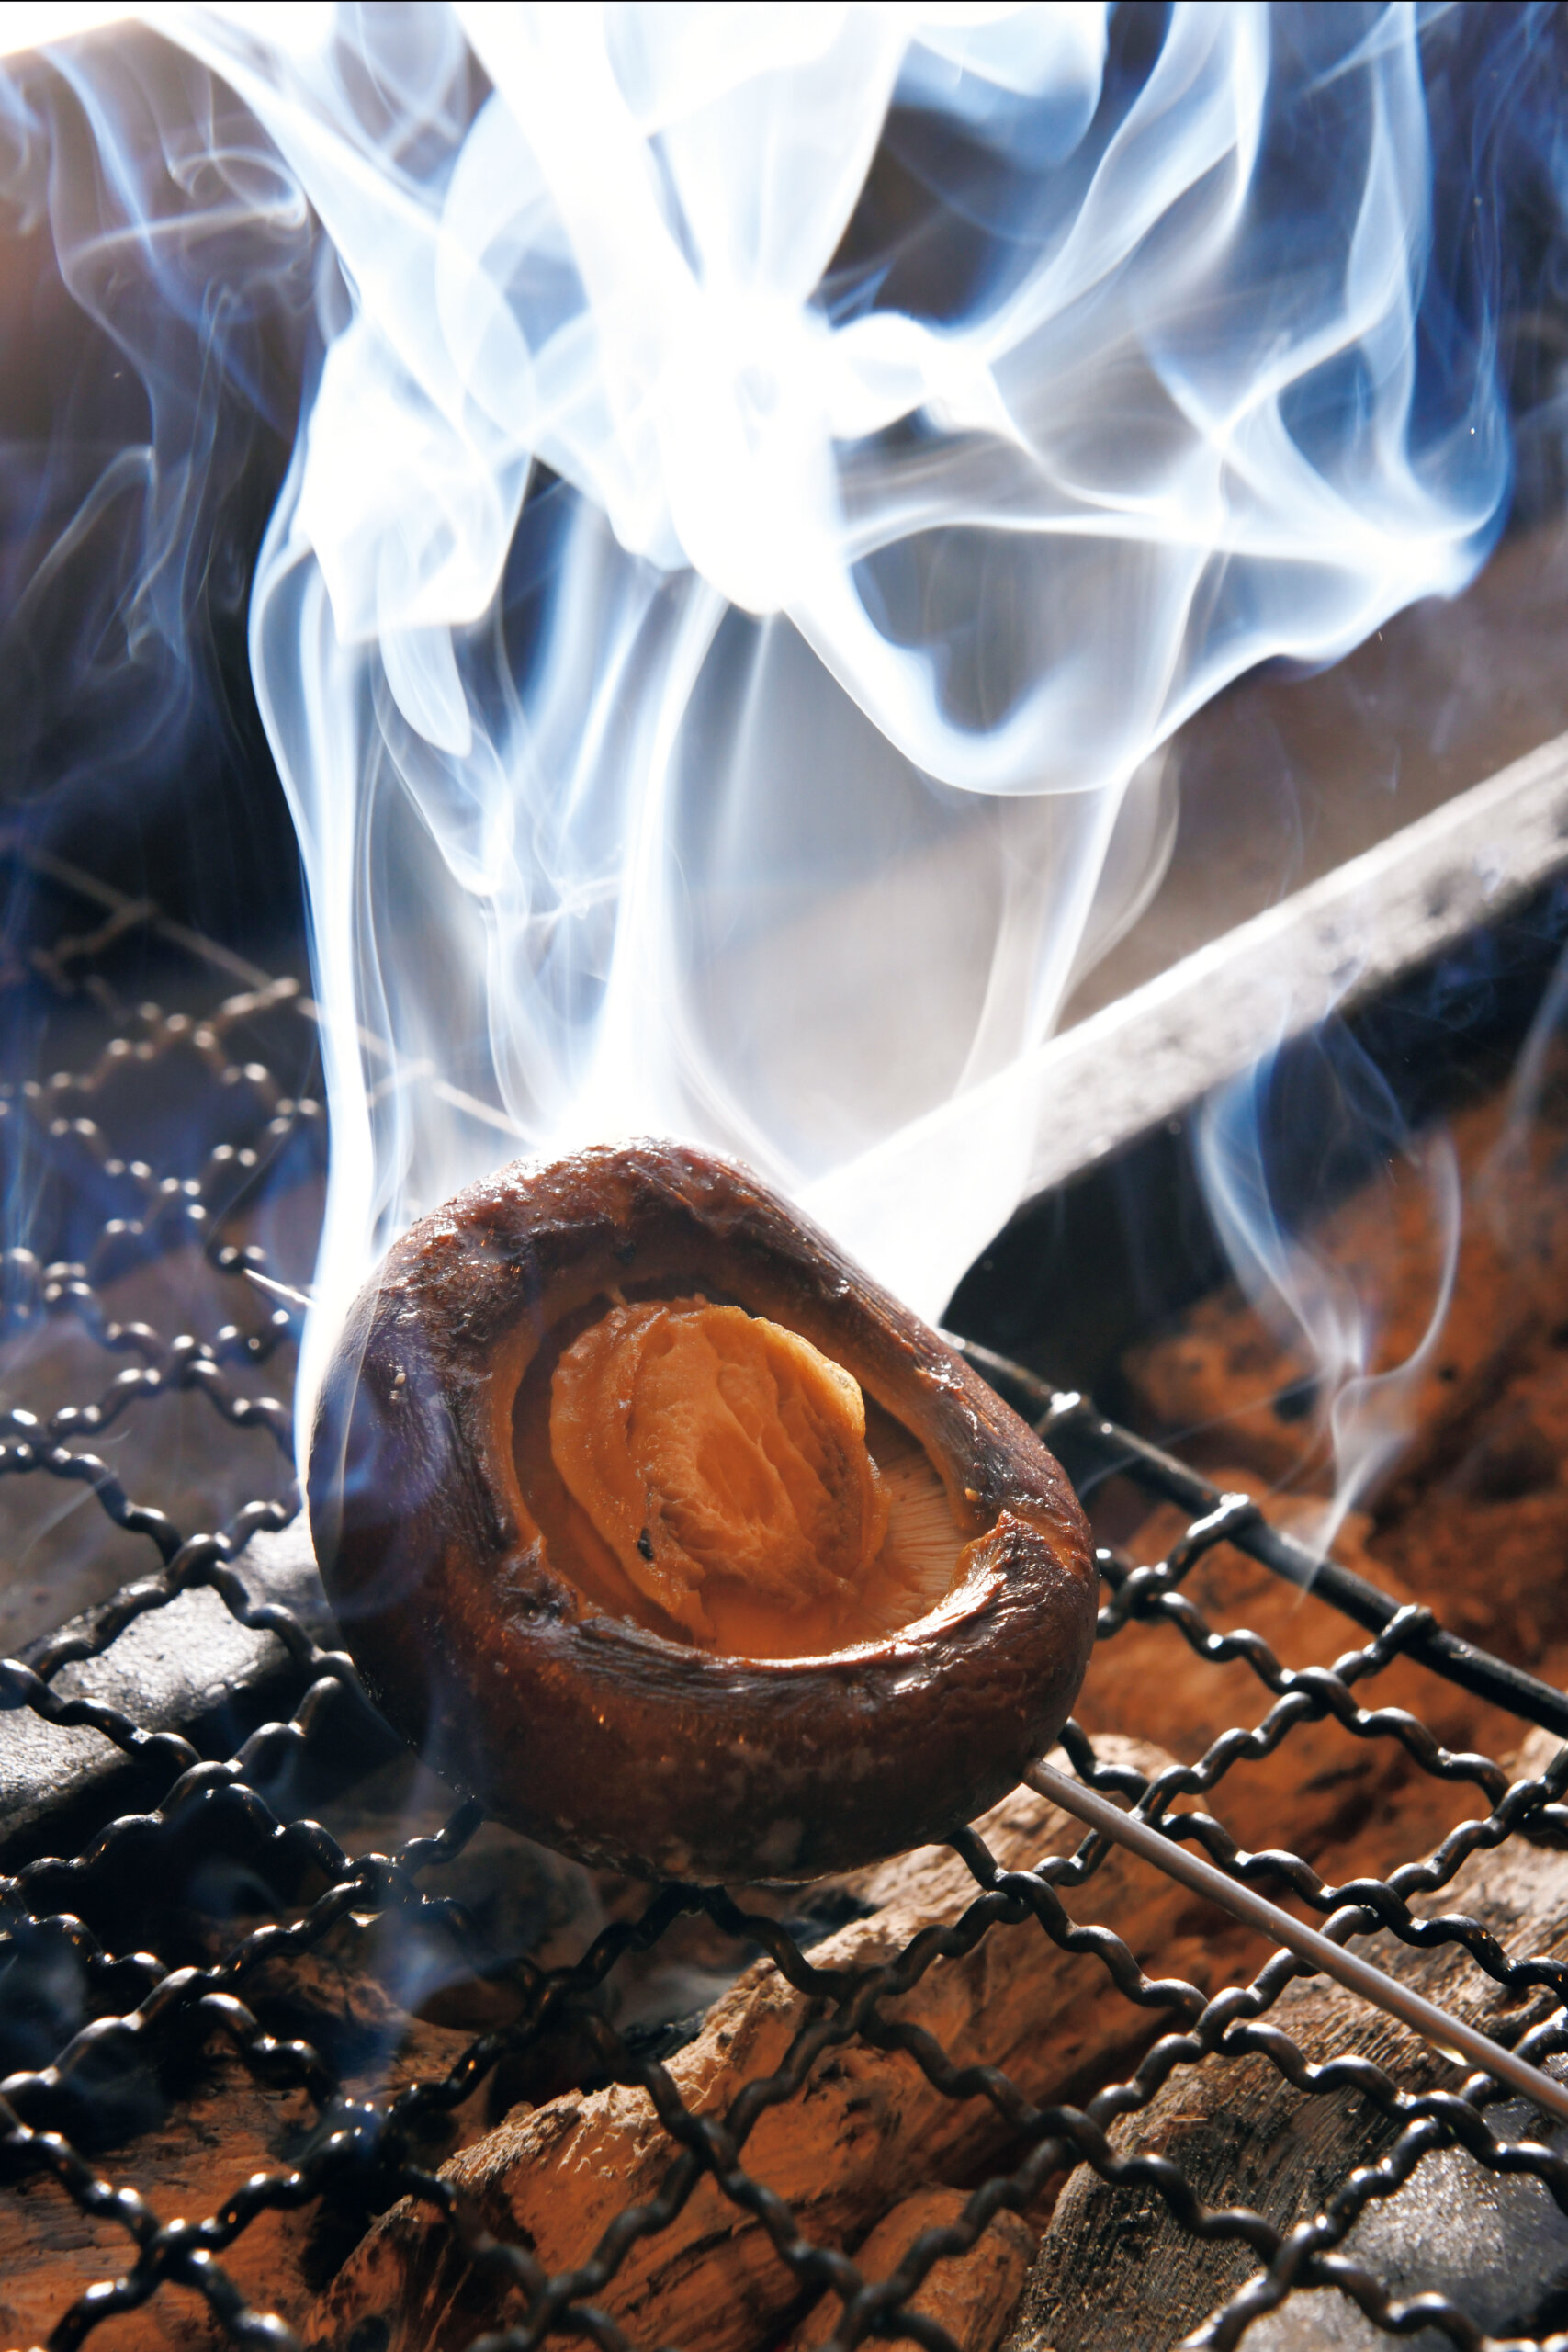 『志そ鳥』<br />
シンプルに炭火焼きしたマッシュルームは、ジューシーで凝縮した風味を堪能できる